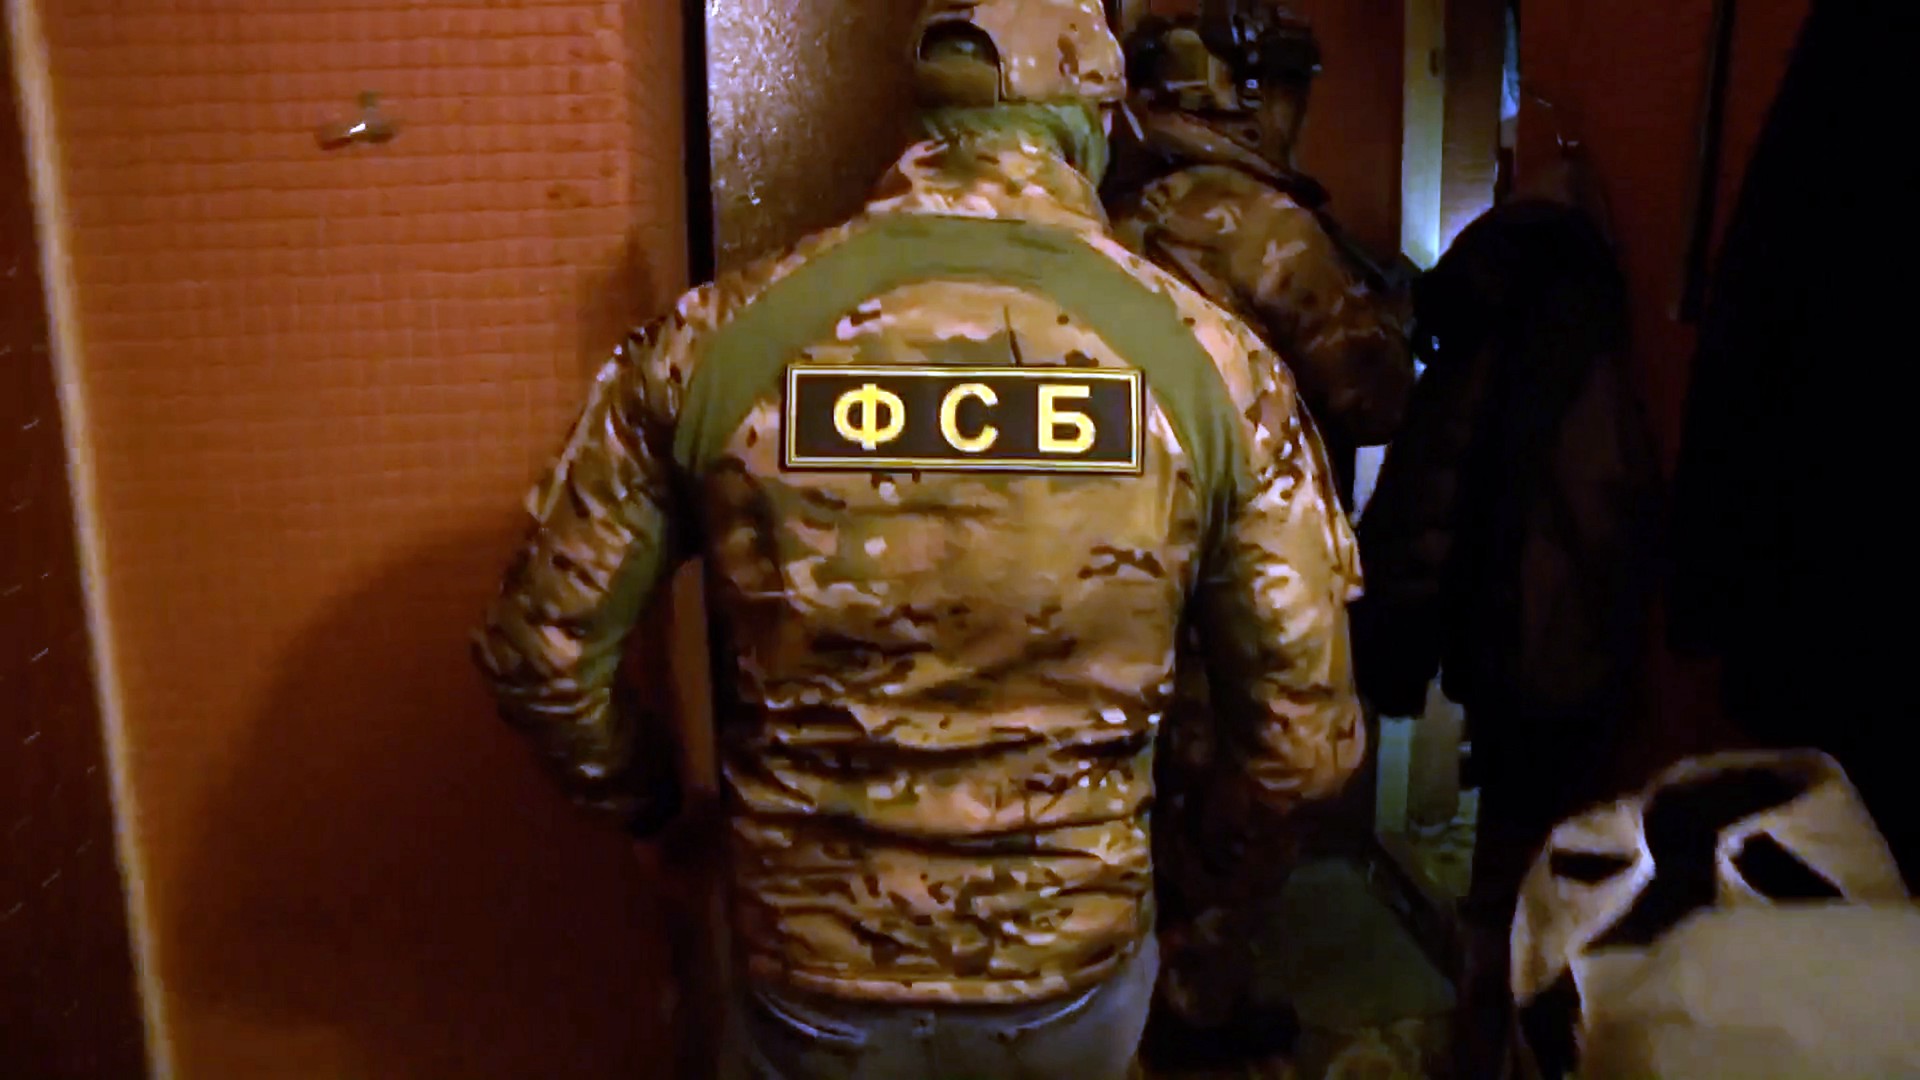 ФСБ задержала жителя Приморья за передачу ГУР Украины данных об уязвимых местах на ж/д путях